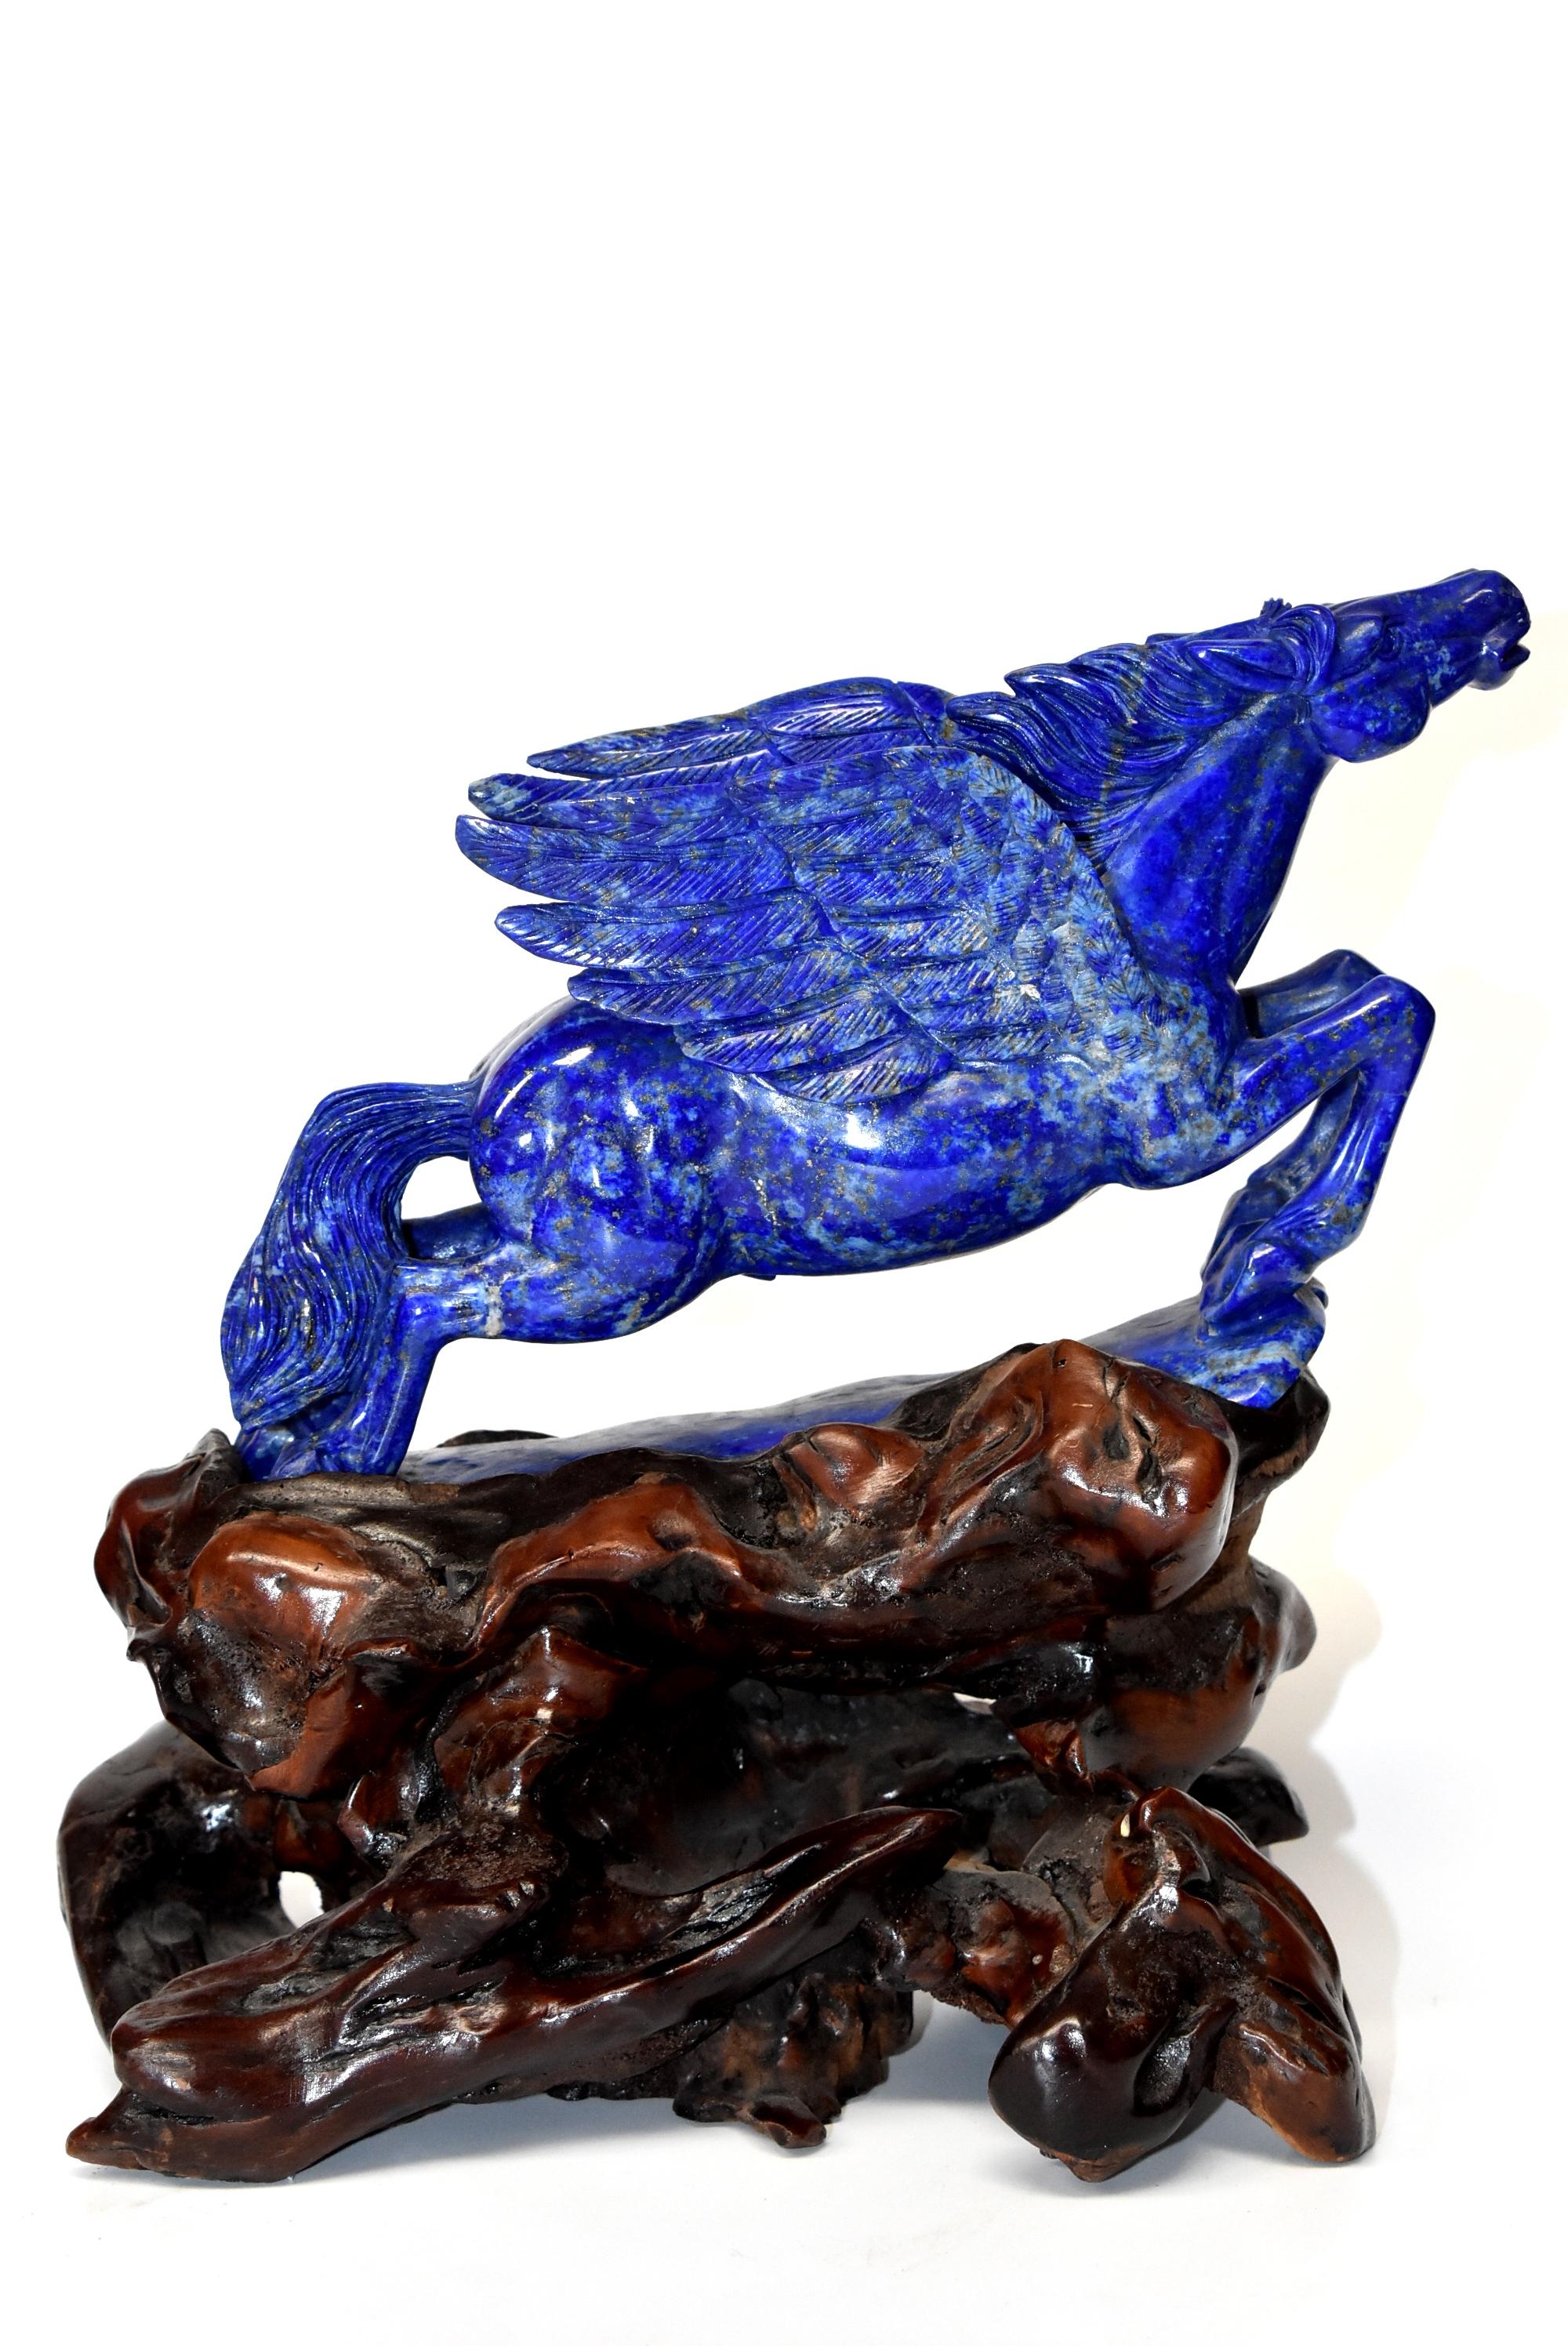 Contemporary Lapis Lazuli Statue, 4.5 Lb Pegasus Sculpture by Known Artist